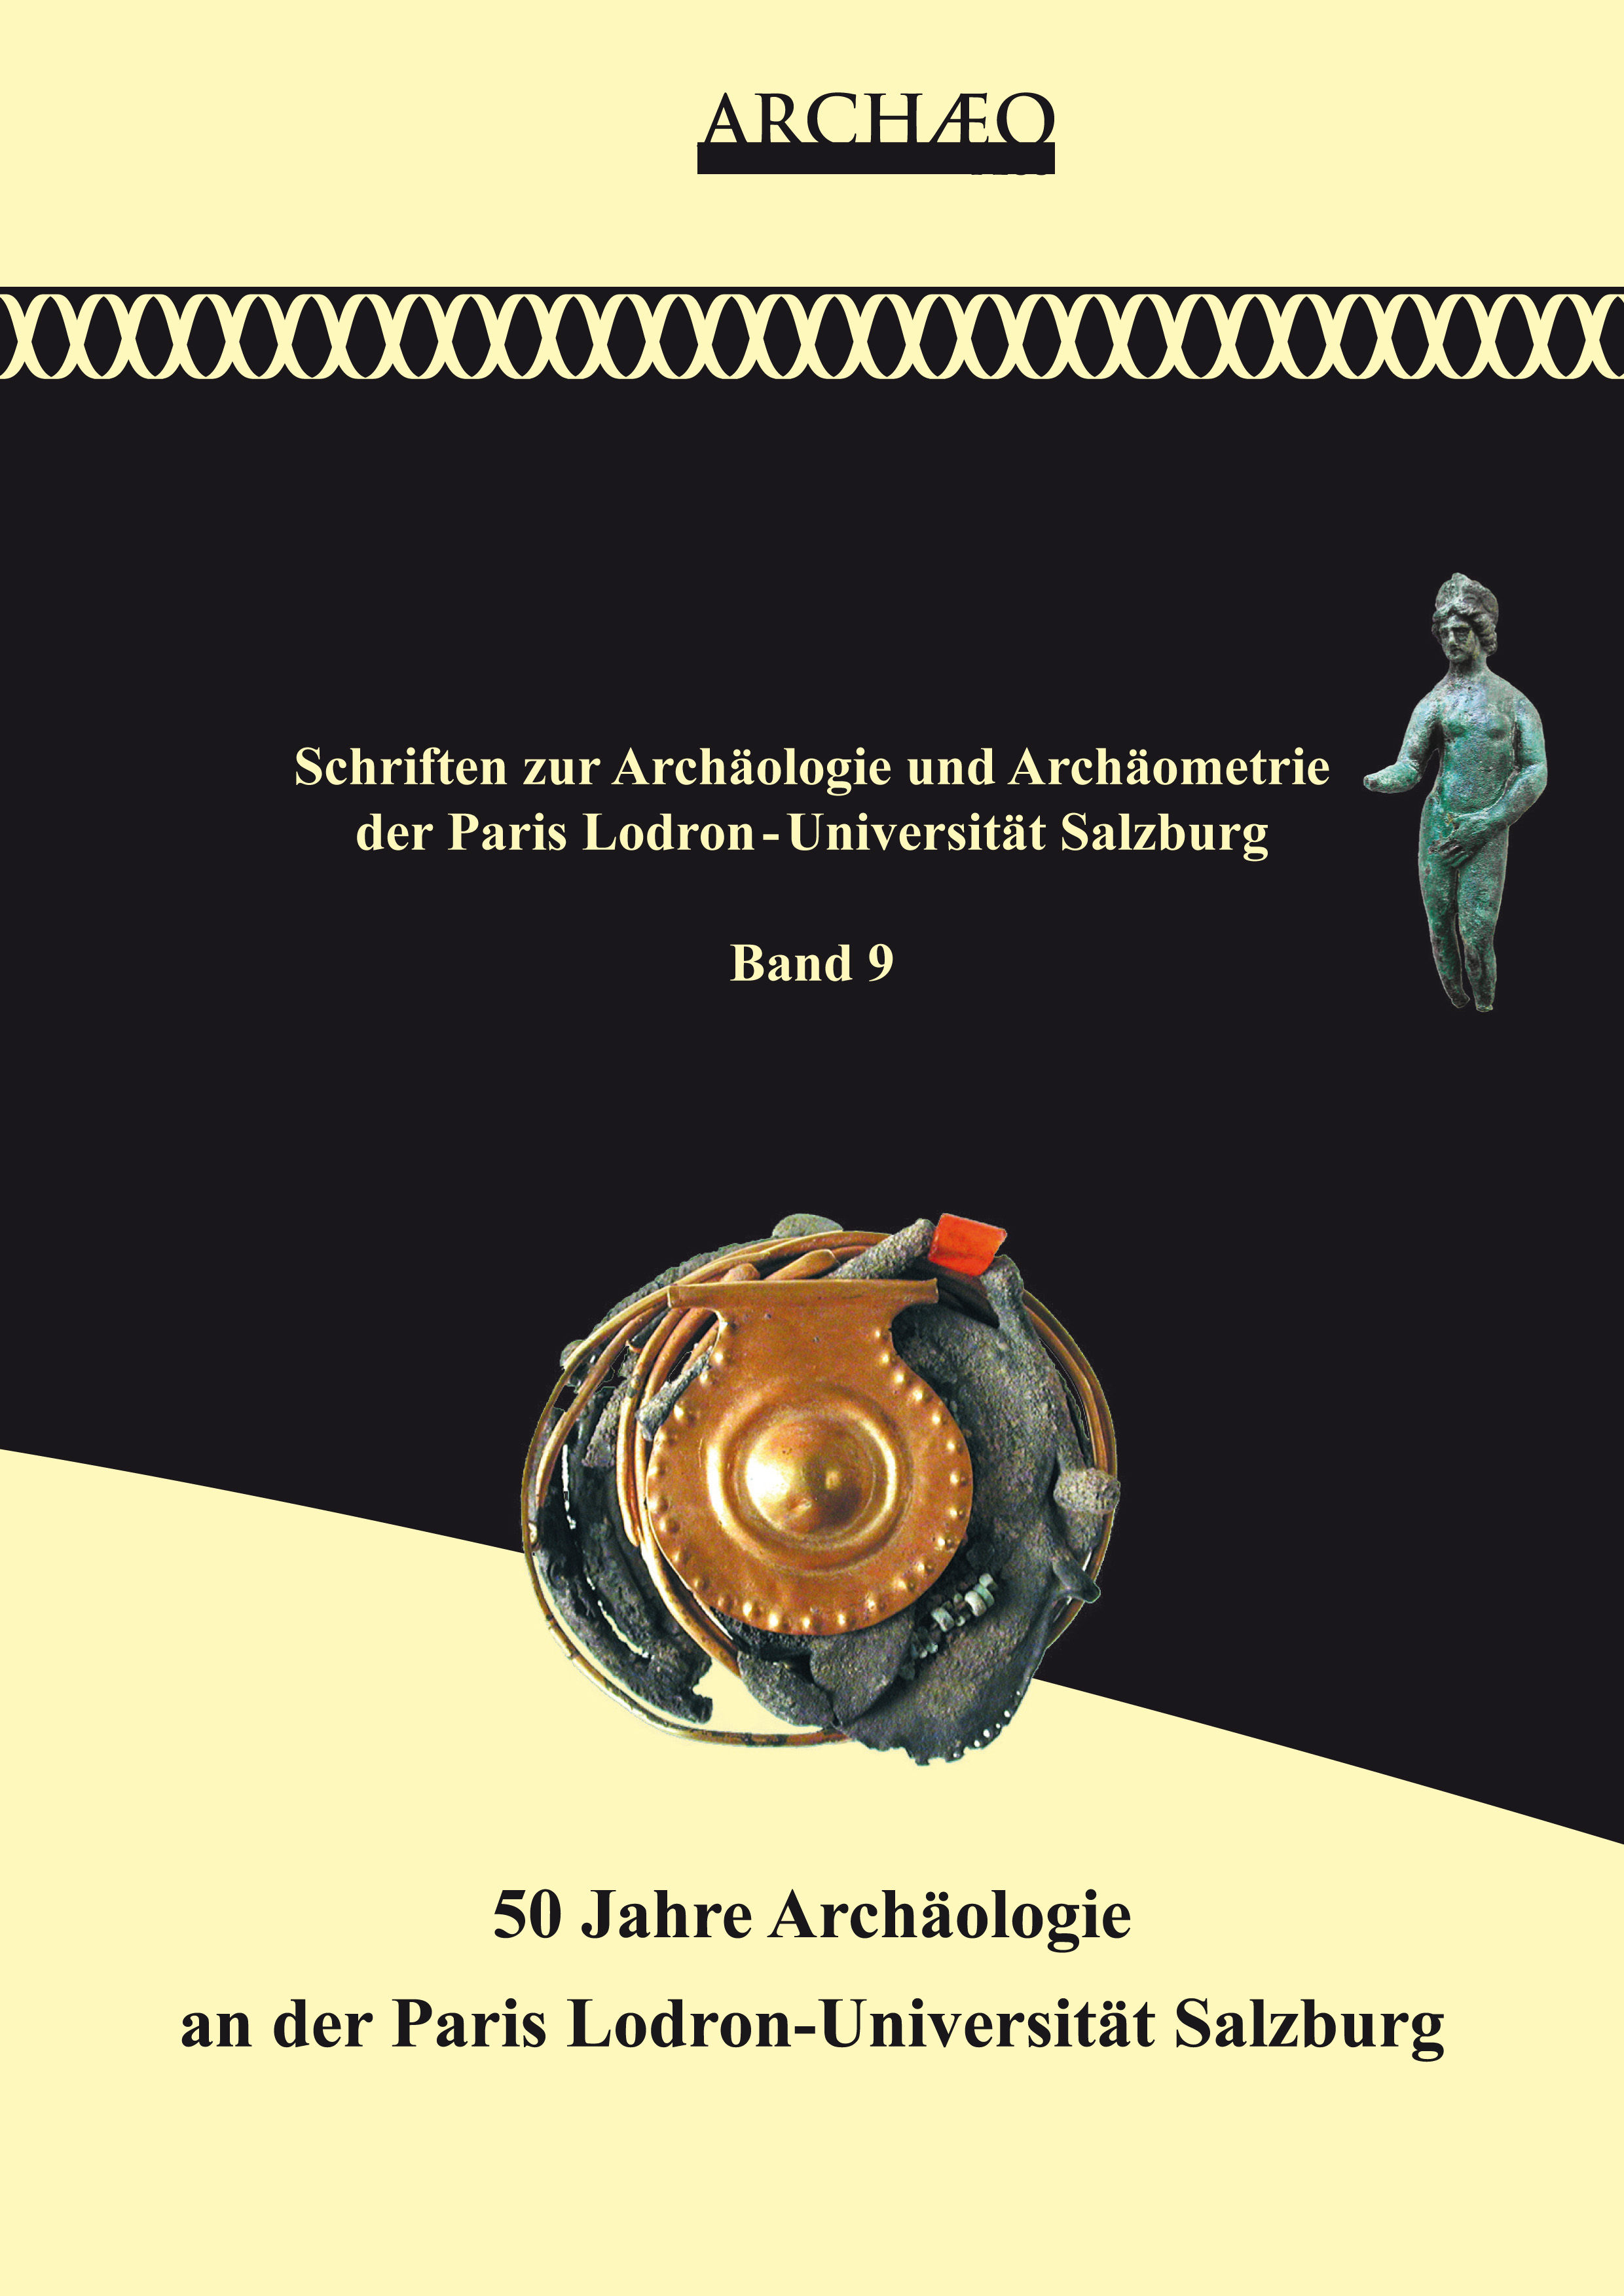 Lang, Felix – Wolfgang Wohlmayr; 50 Jahre Archäologie an der Paris Lodron-Universität Salzburg